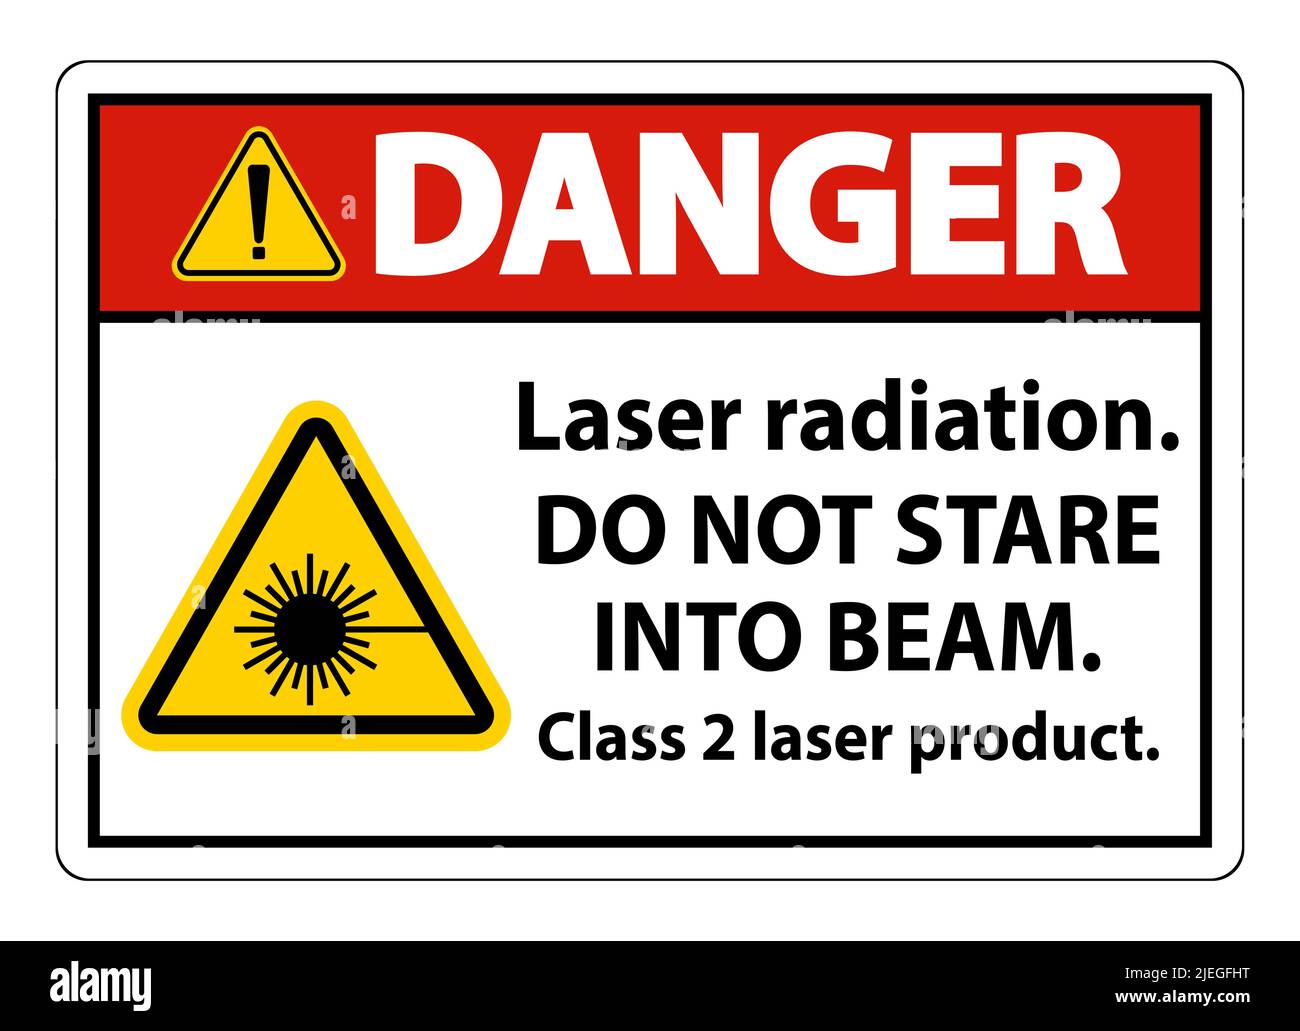 Danger rayonnement laser, ne pas regarder dans le faisceau, produit laser  de classe 2 signalisation sur fond blanc Image Vectorielle Stock - Alamy